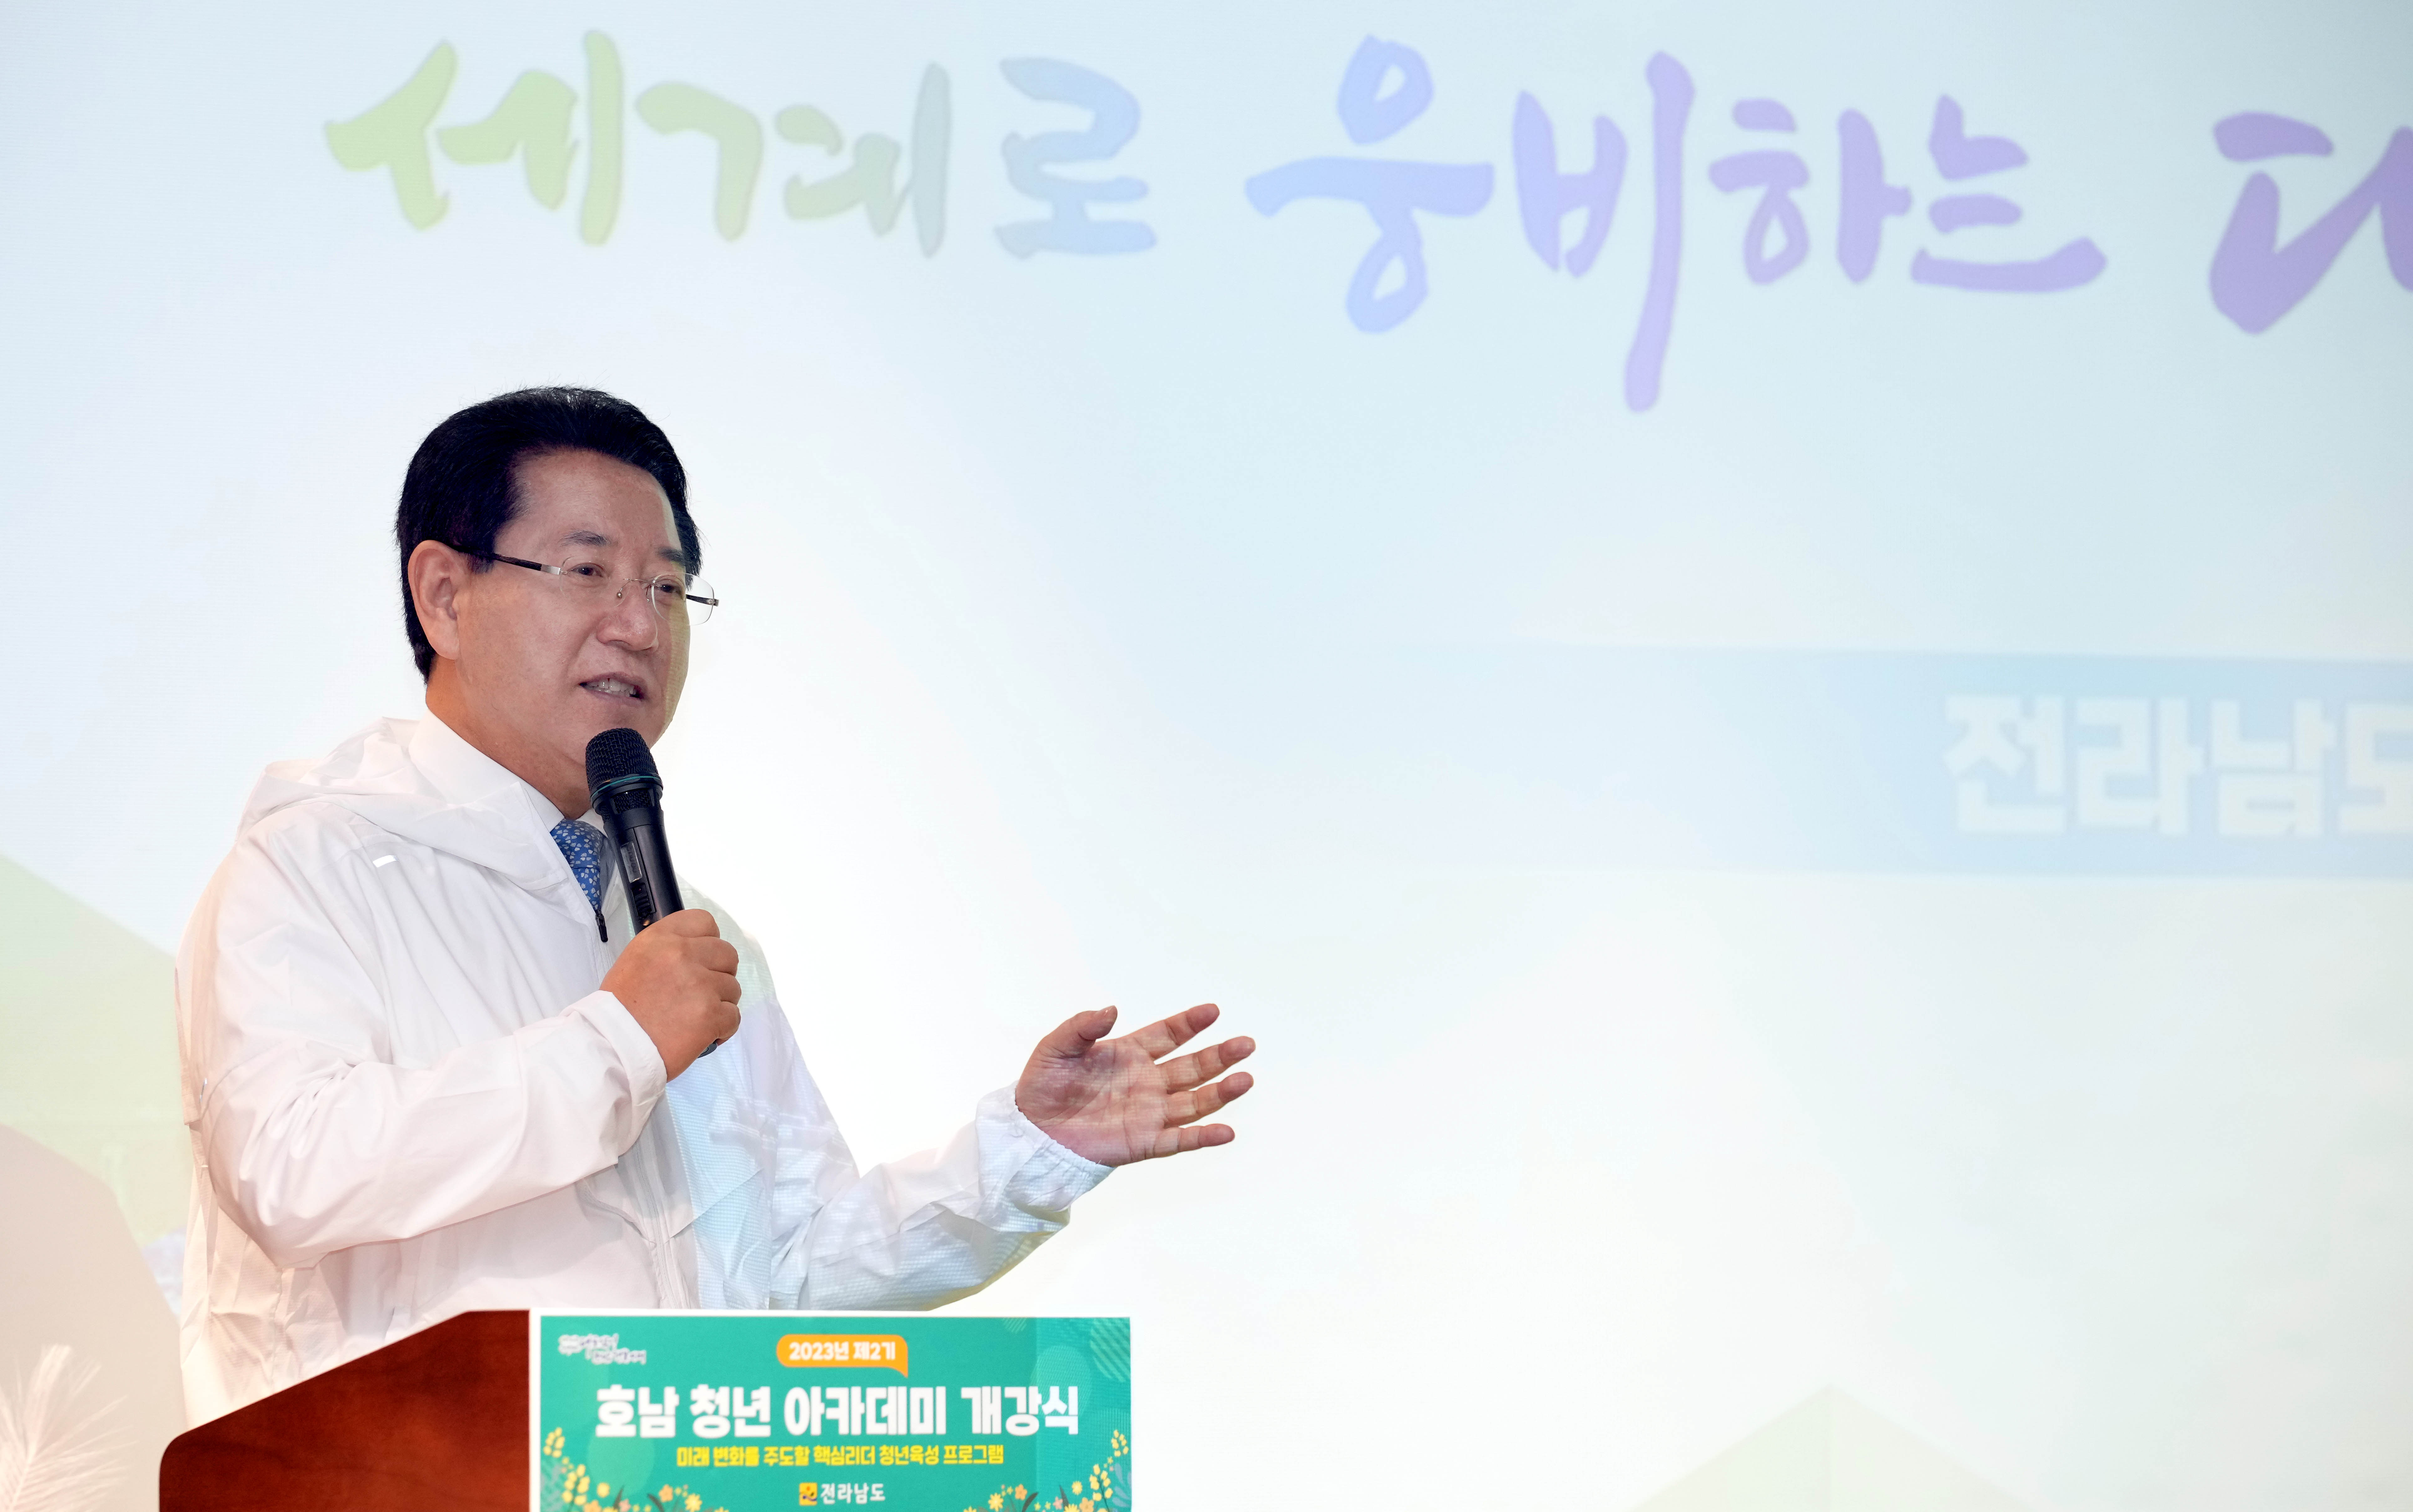 대한민국 청년 핵심 리더들과 ‘소통간담회’ 개최2